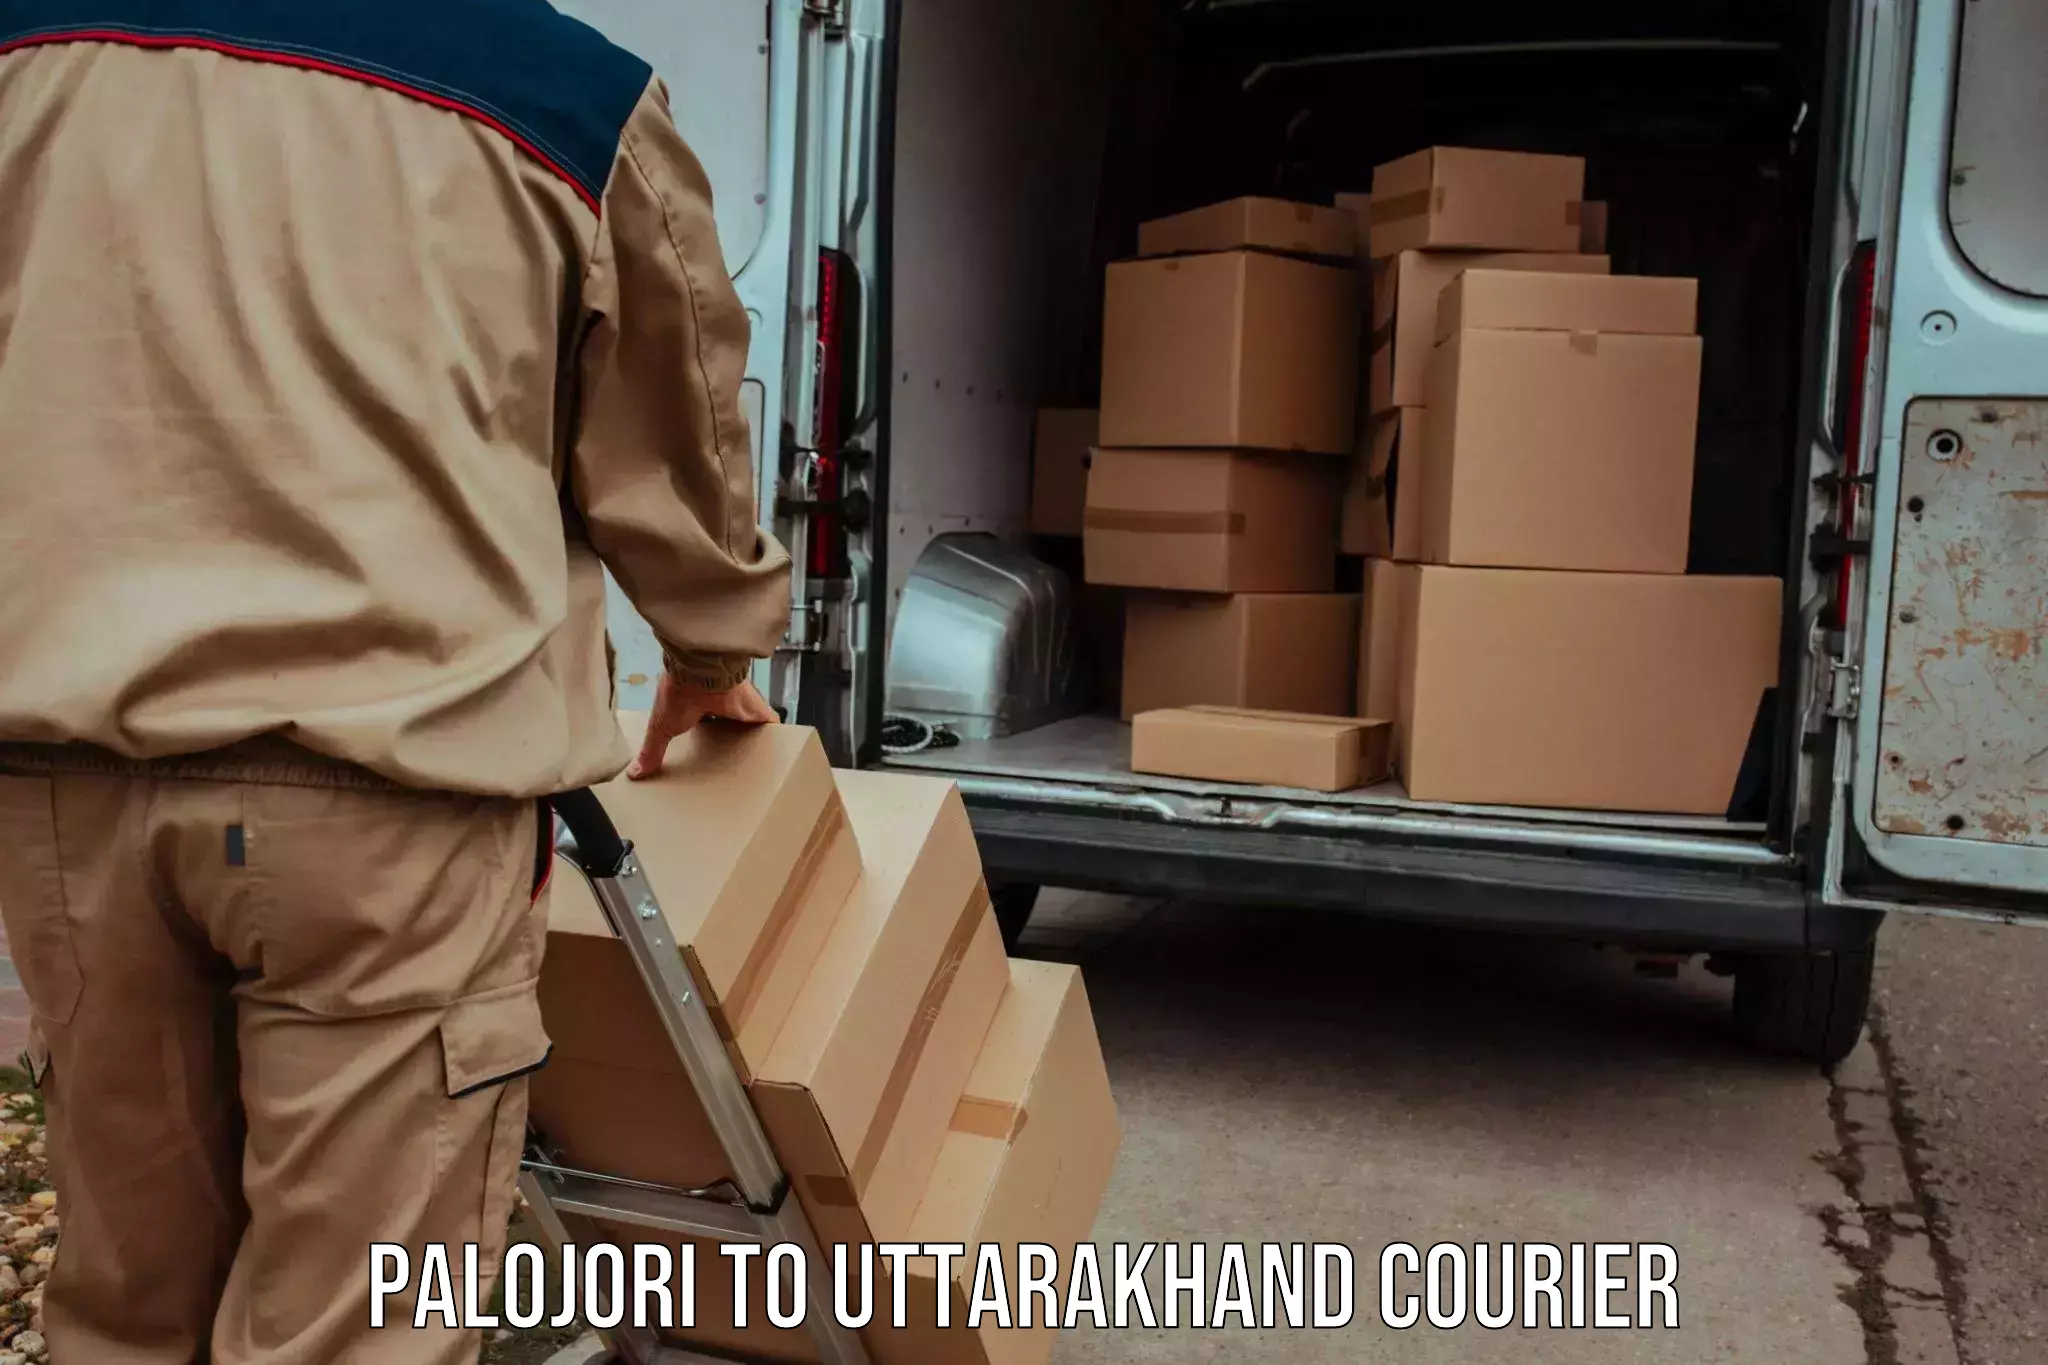 Next-day freight services Palojori to Uttarkashi